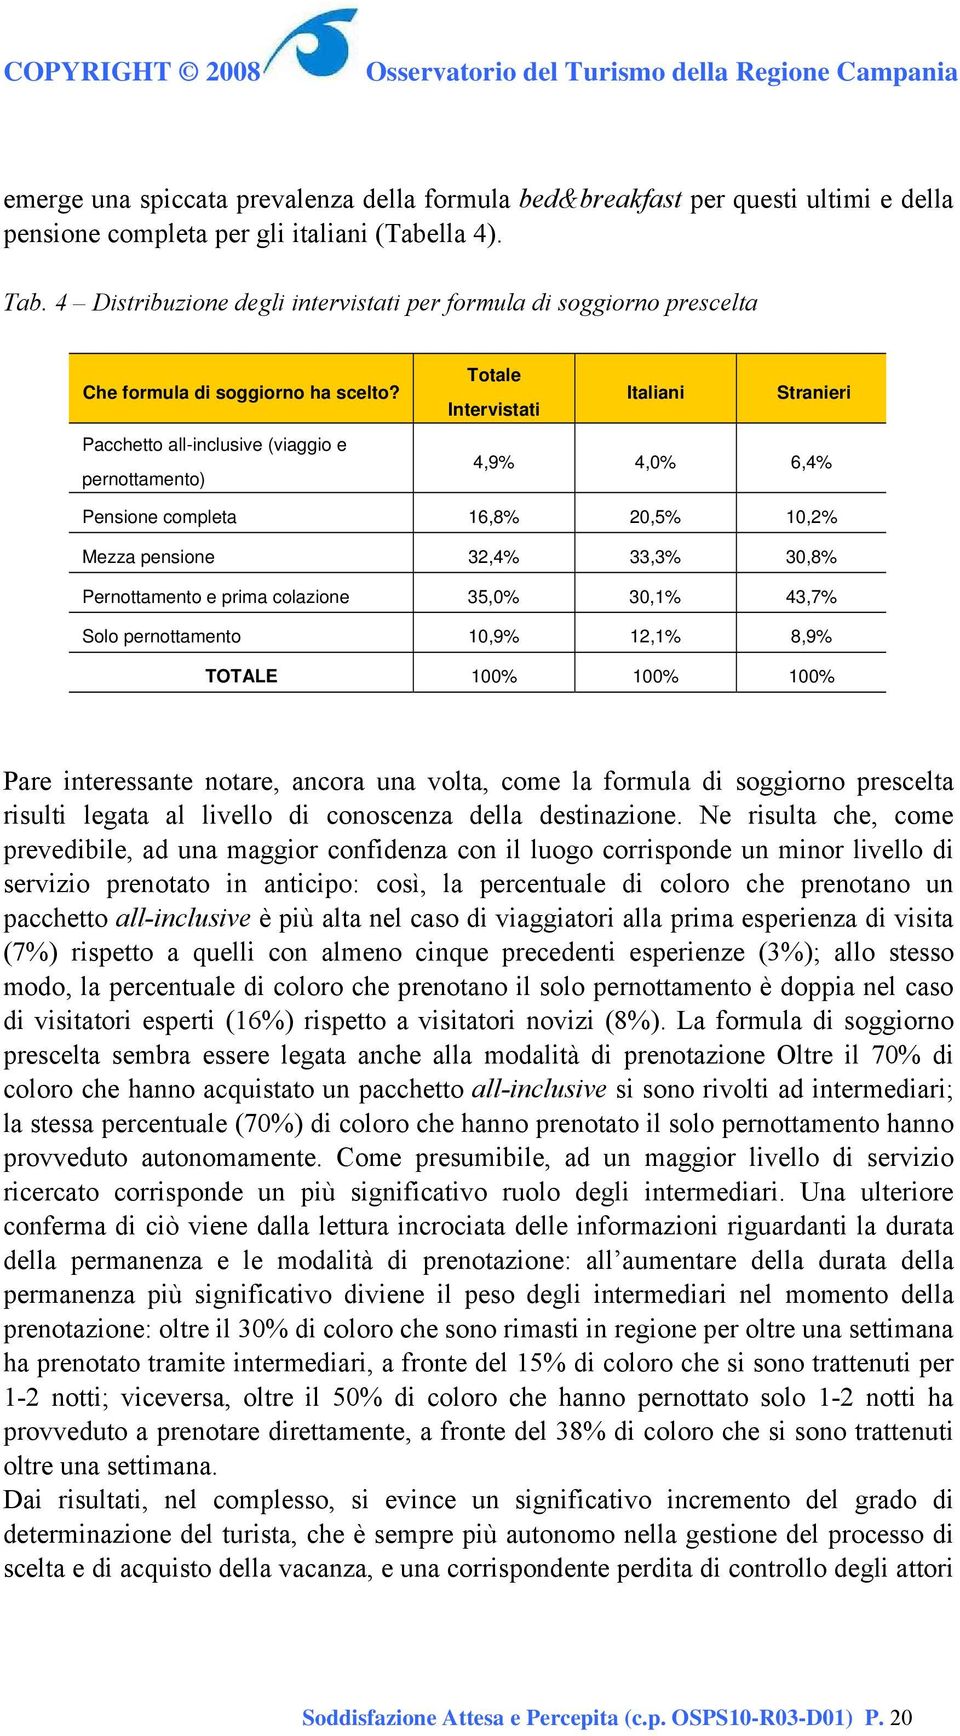 Pacchetto all-inclusive (viaggio e pernottamento) Totale Intervistati Italiani Stranieri 4,9% 4,0% 6,4% Pensione completa 16,8% 20,5% 10,2% Mezza pensione 32,4% 33,3% 30,8% Pernottamento e prima